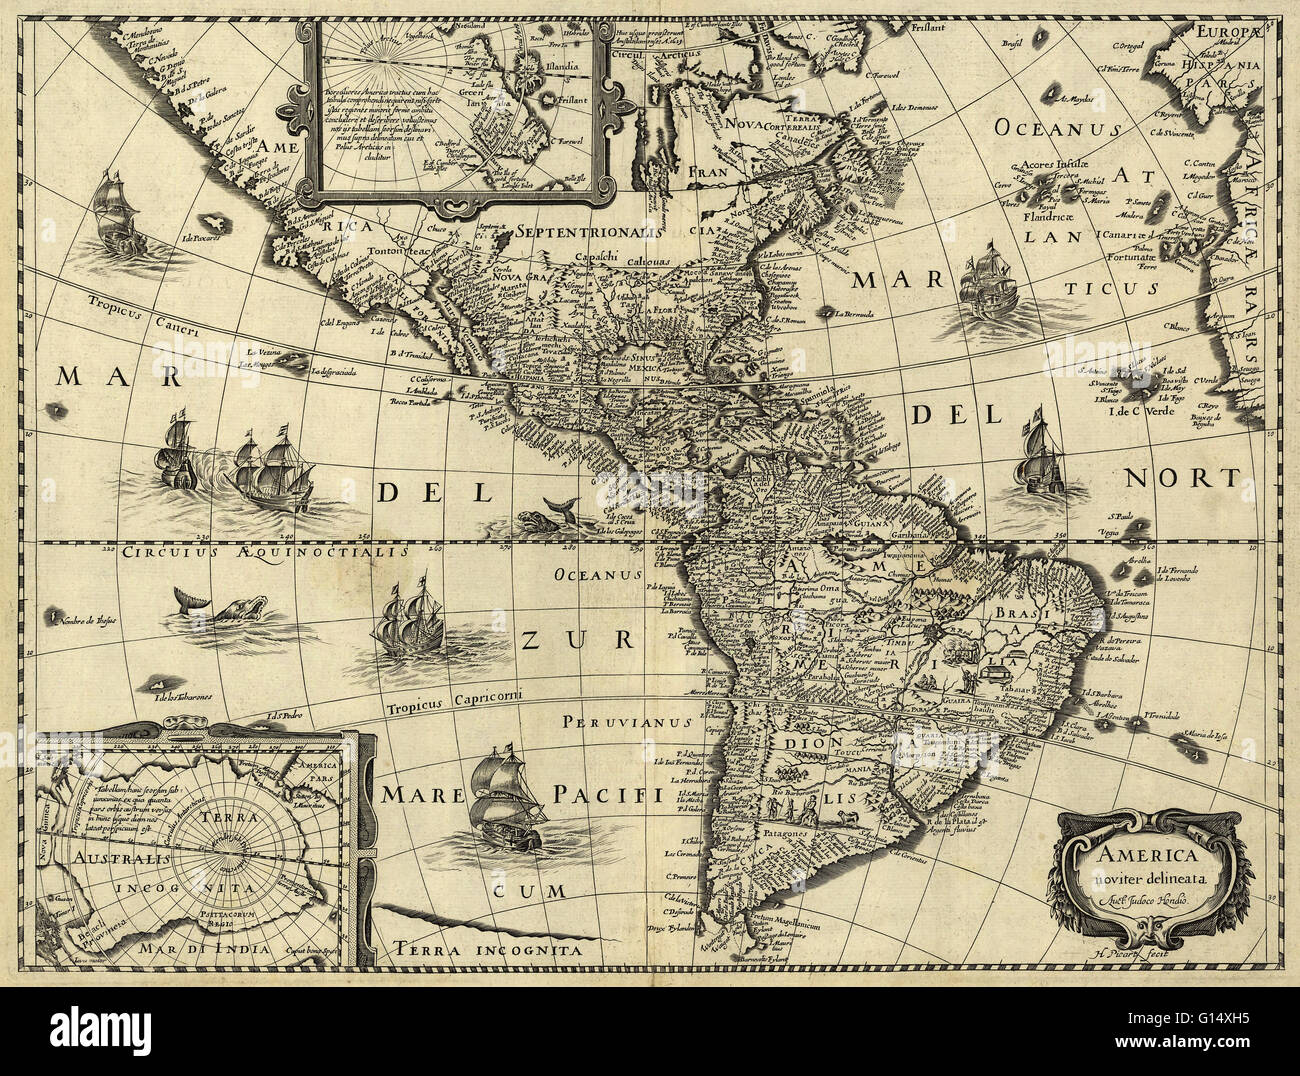 17e siècle la carte des Amériques. Publié à Paris vers 1640, cette carte est par le cartographe flamand Jodocus Hondius (1563-1612). La carte montre la géographie de l'Amérique, le nouveau monde d'être exploré par les Européens. La plupart d'Amérique centrale et du Sud Banque D'Images